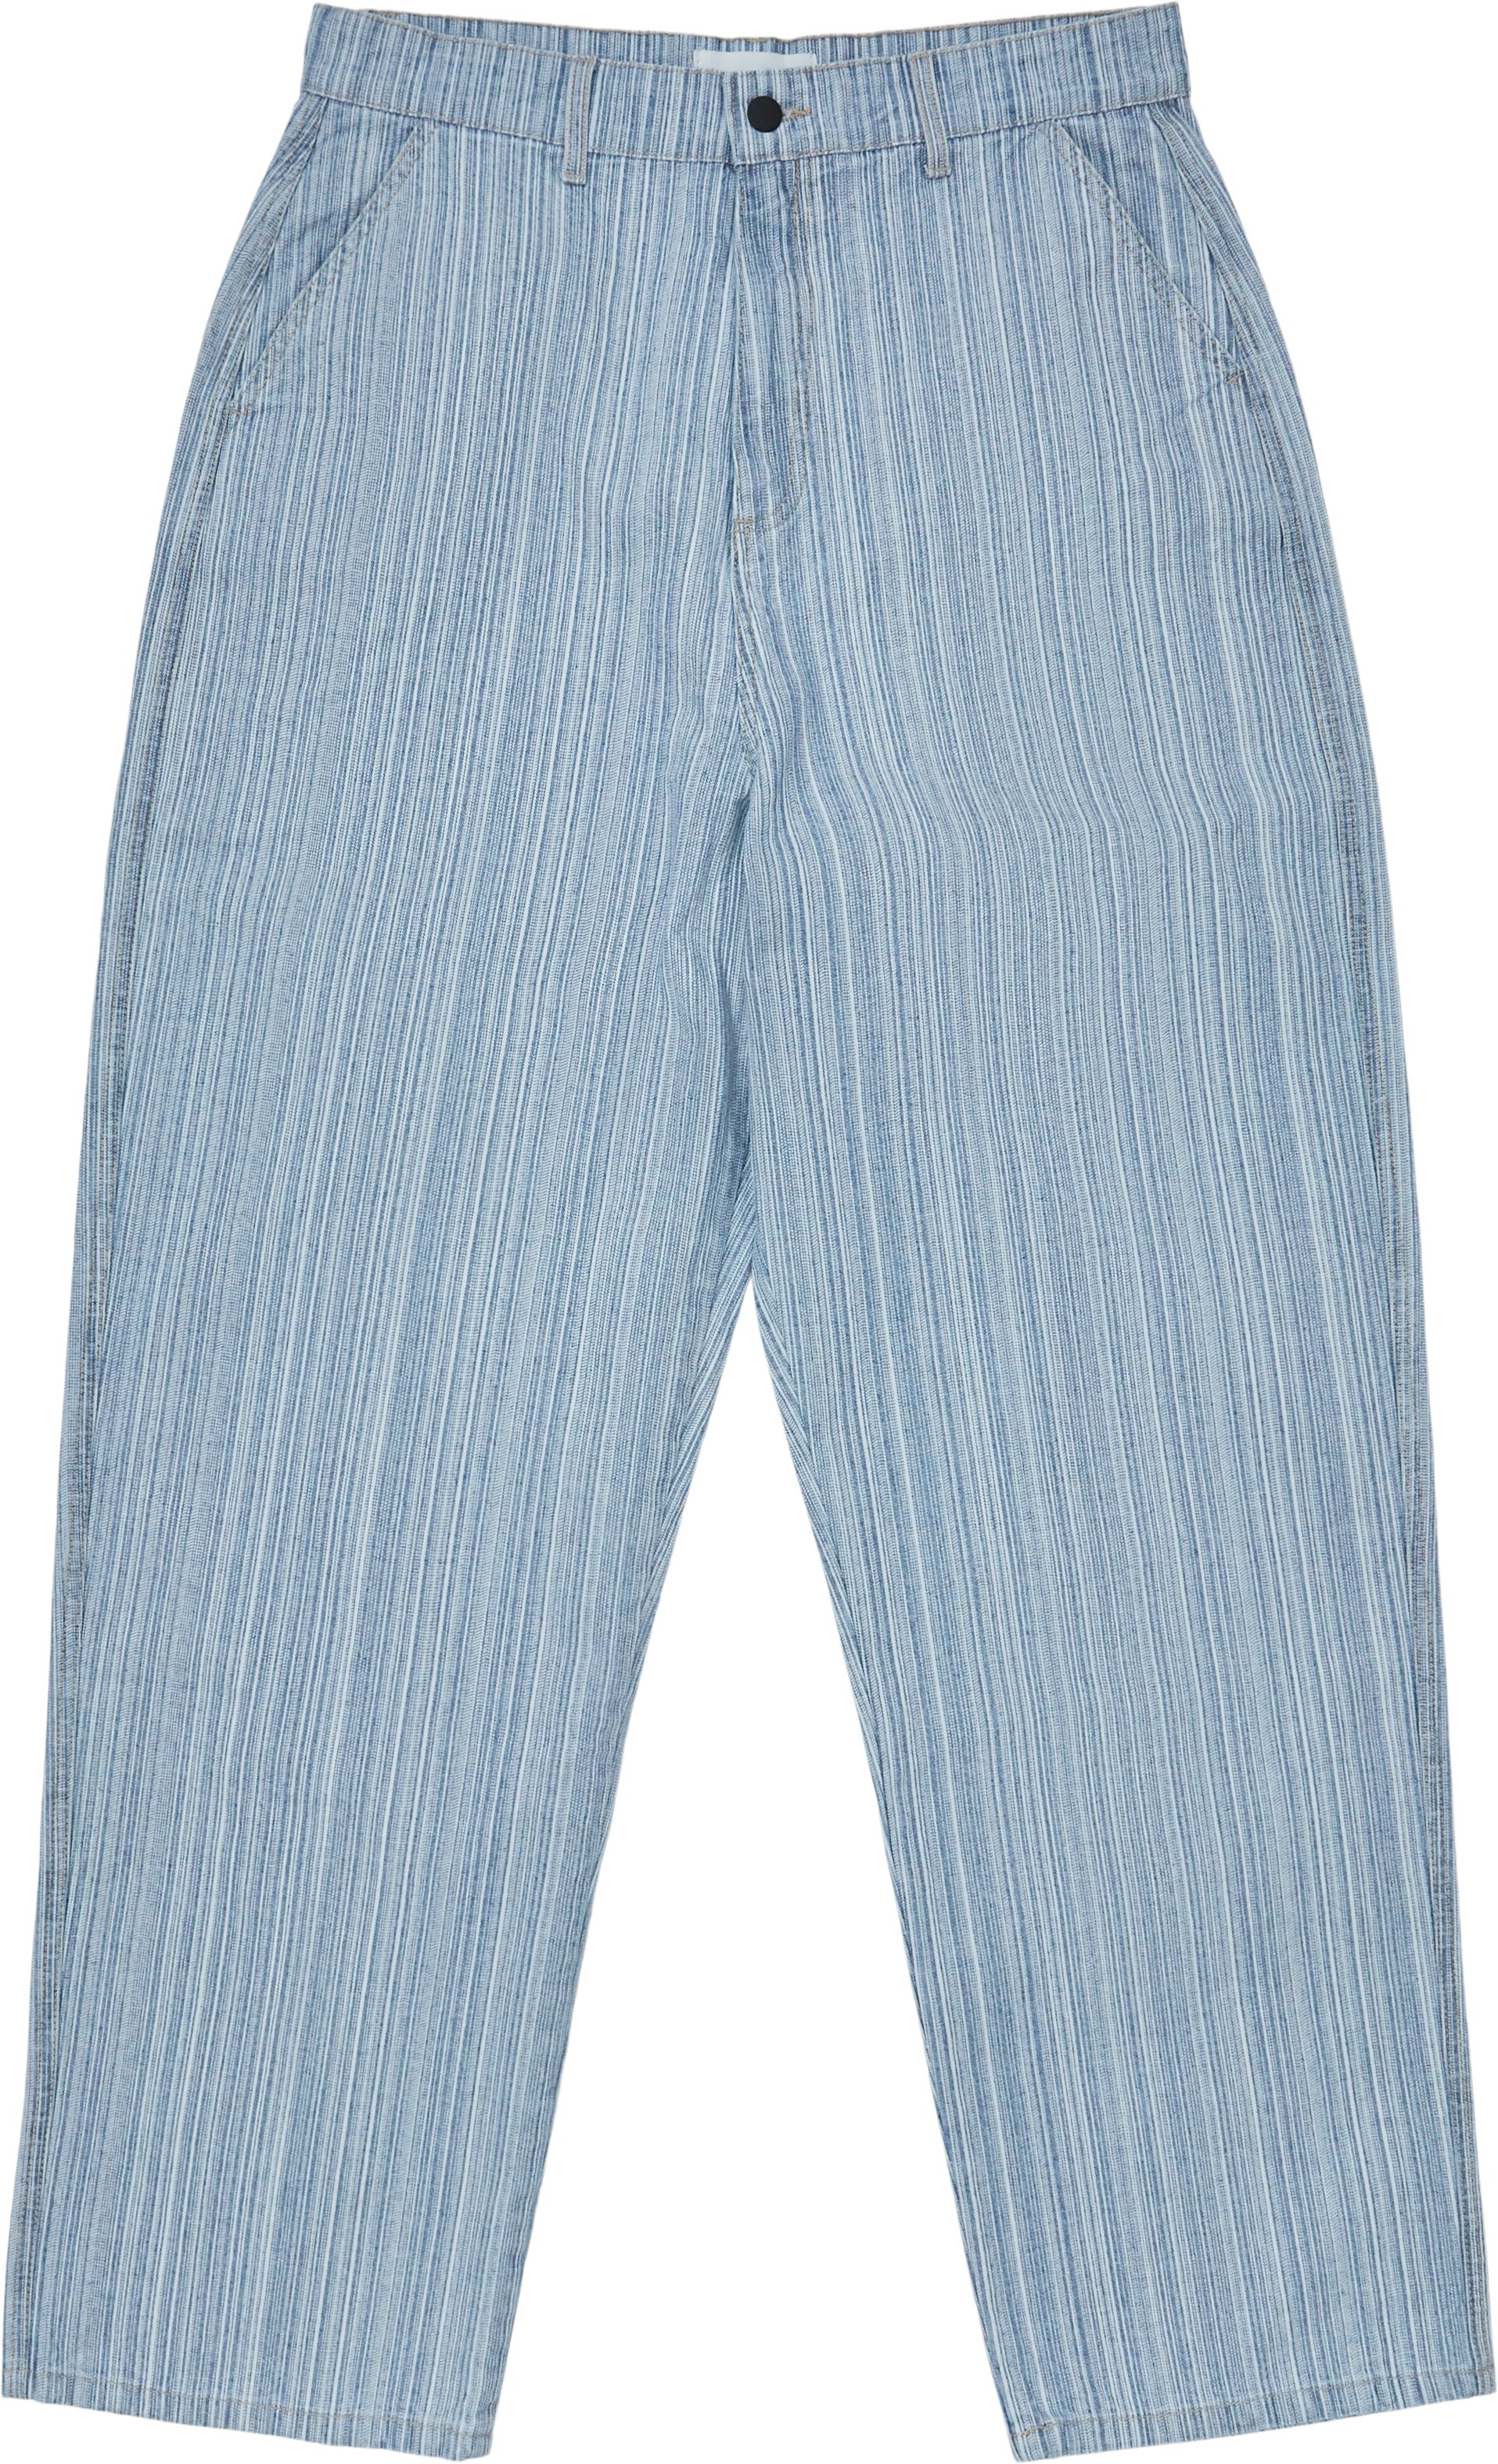 Striped Denim Pants - Jeans - Baggy fit - Denim